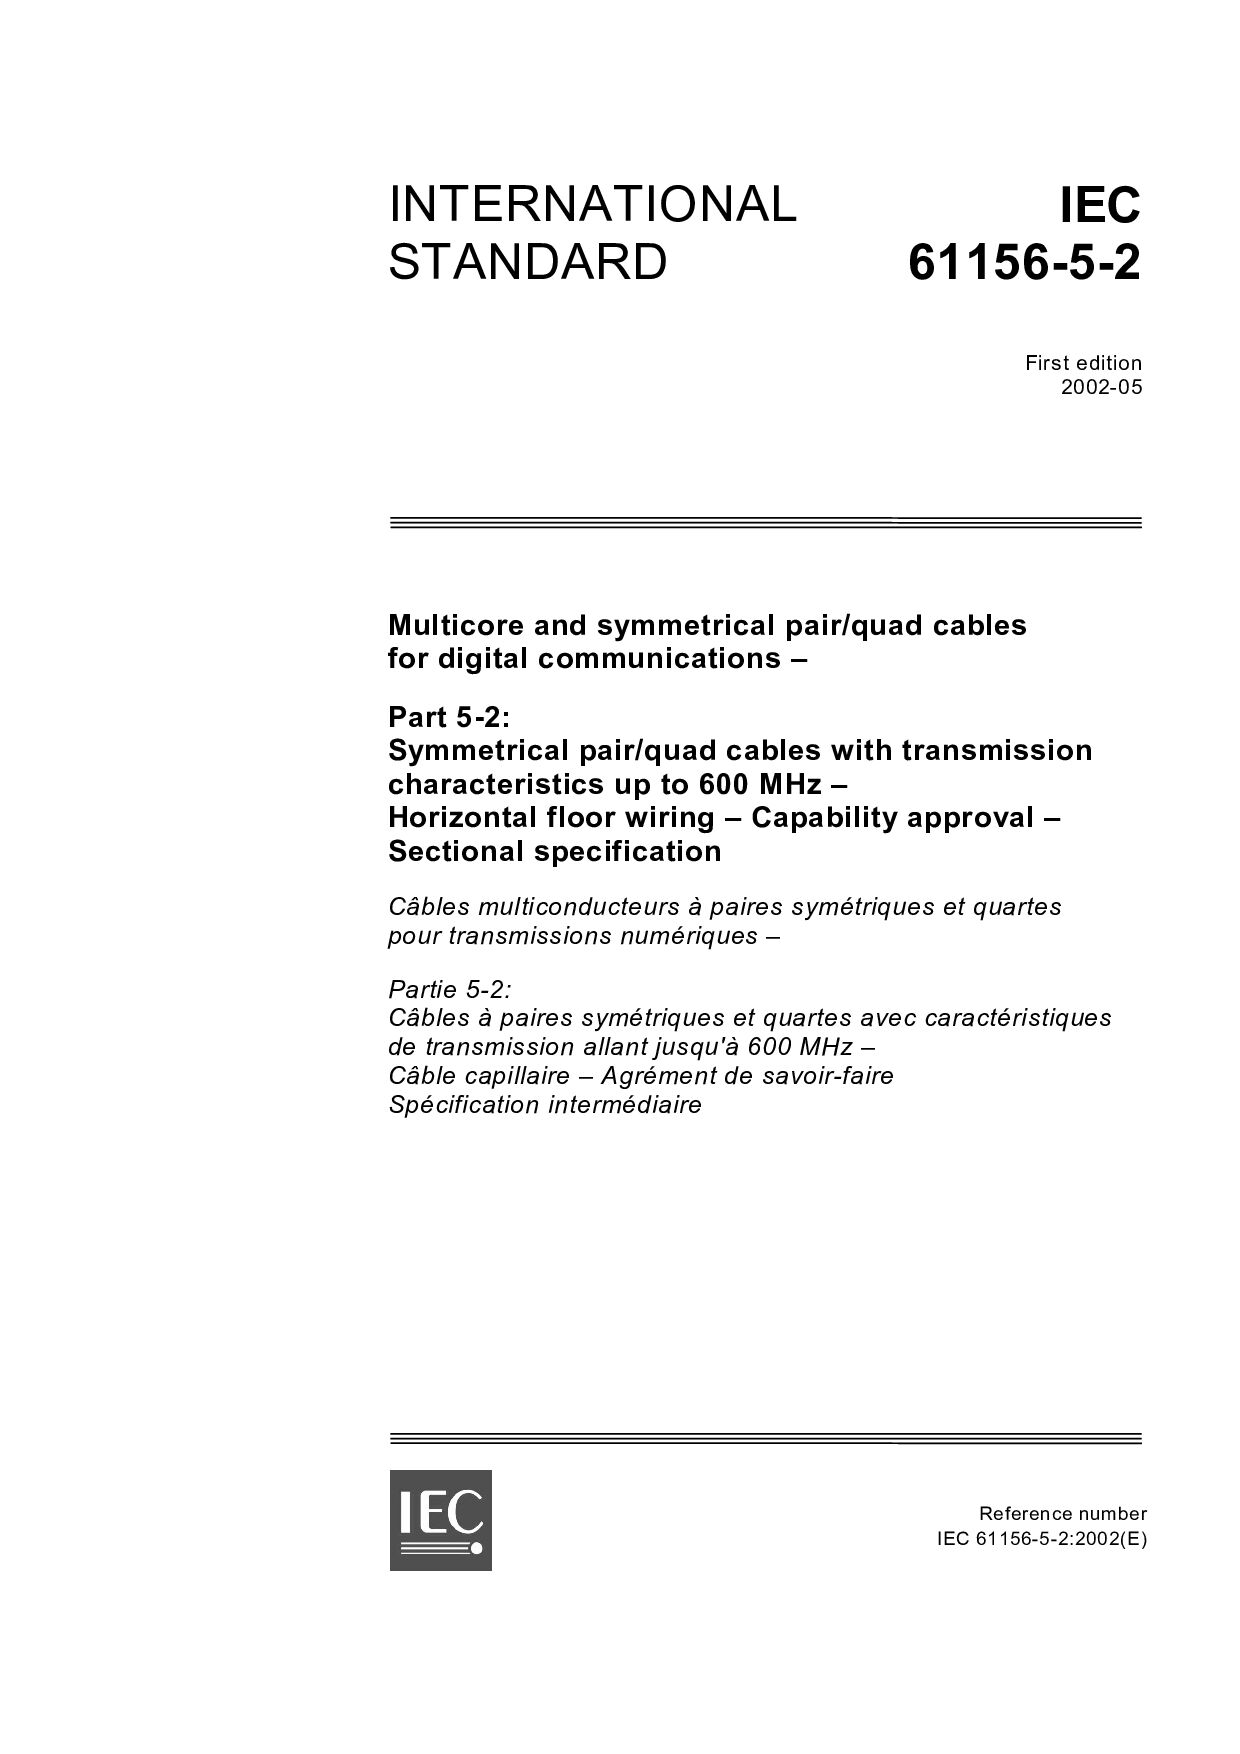 IEC 61156-5-2:2002